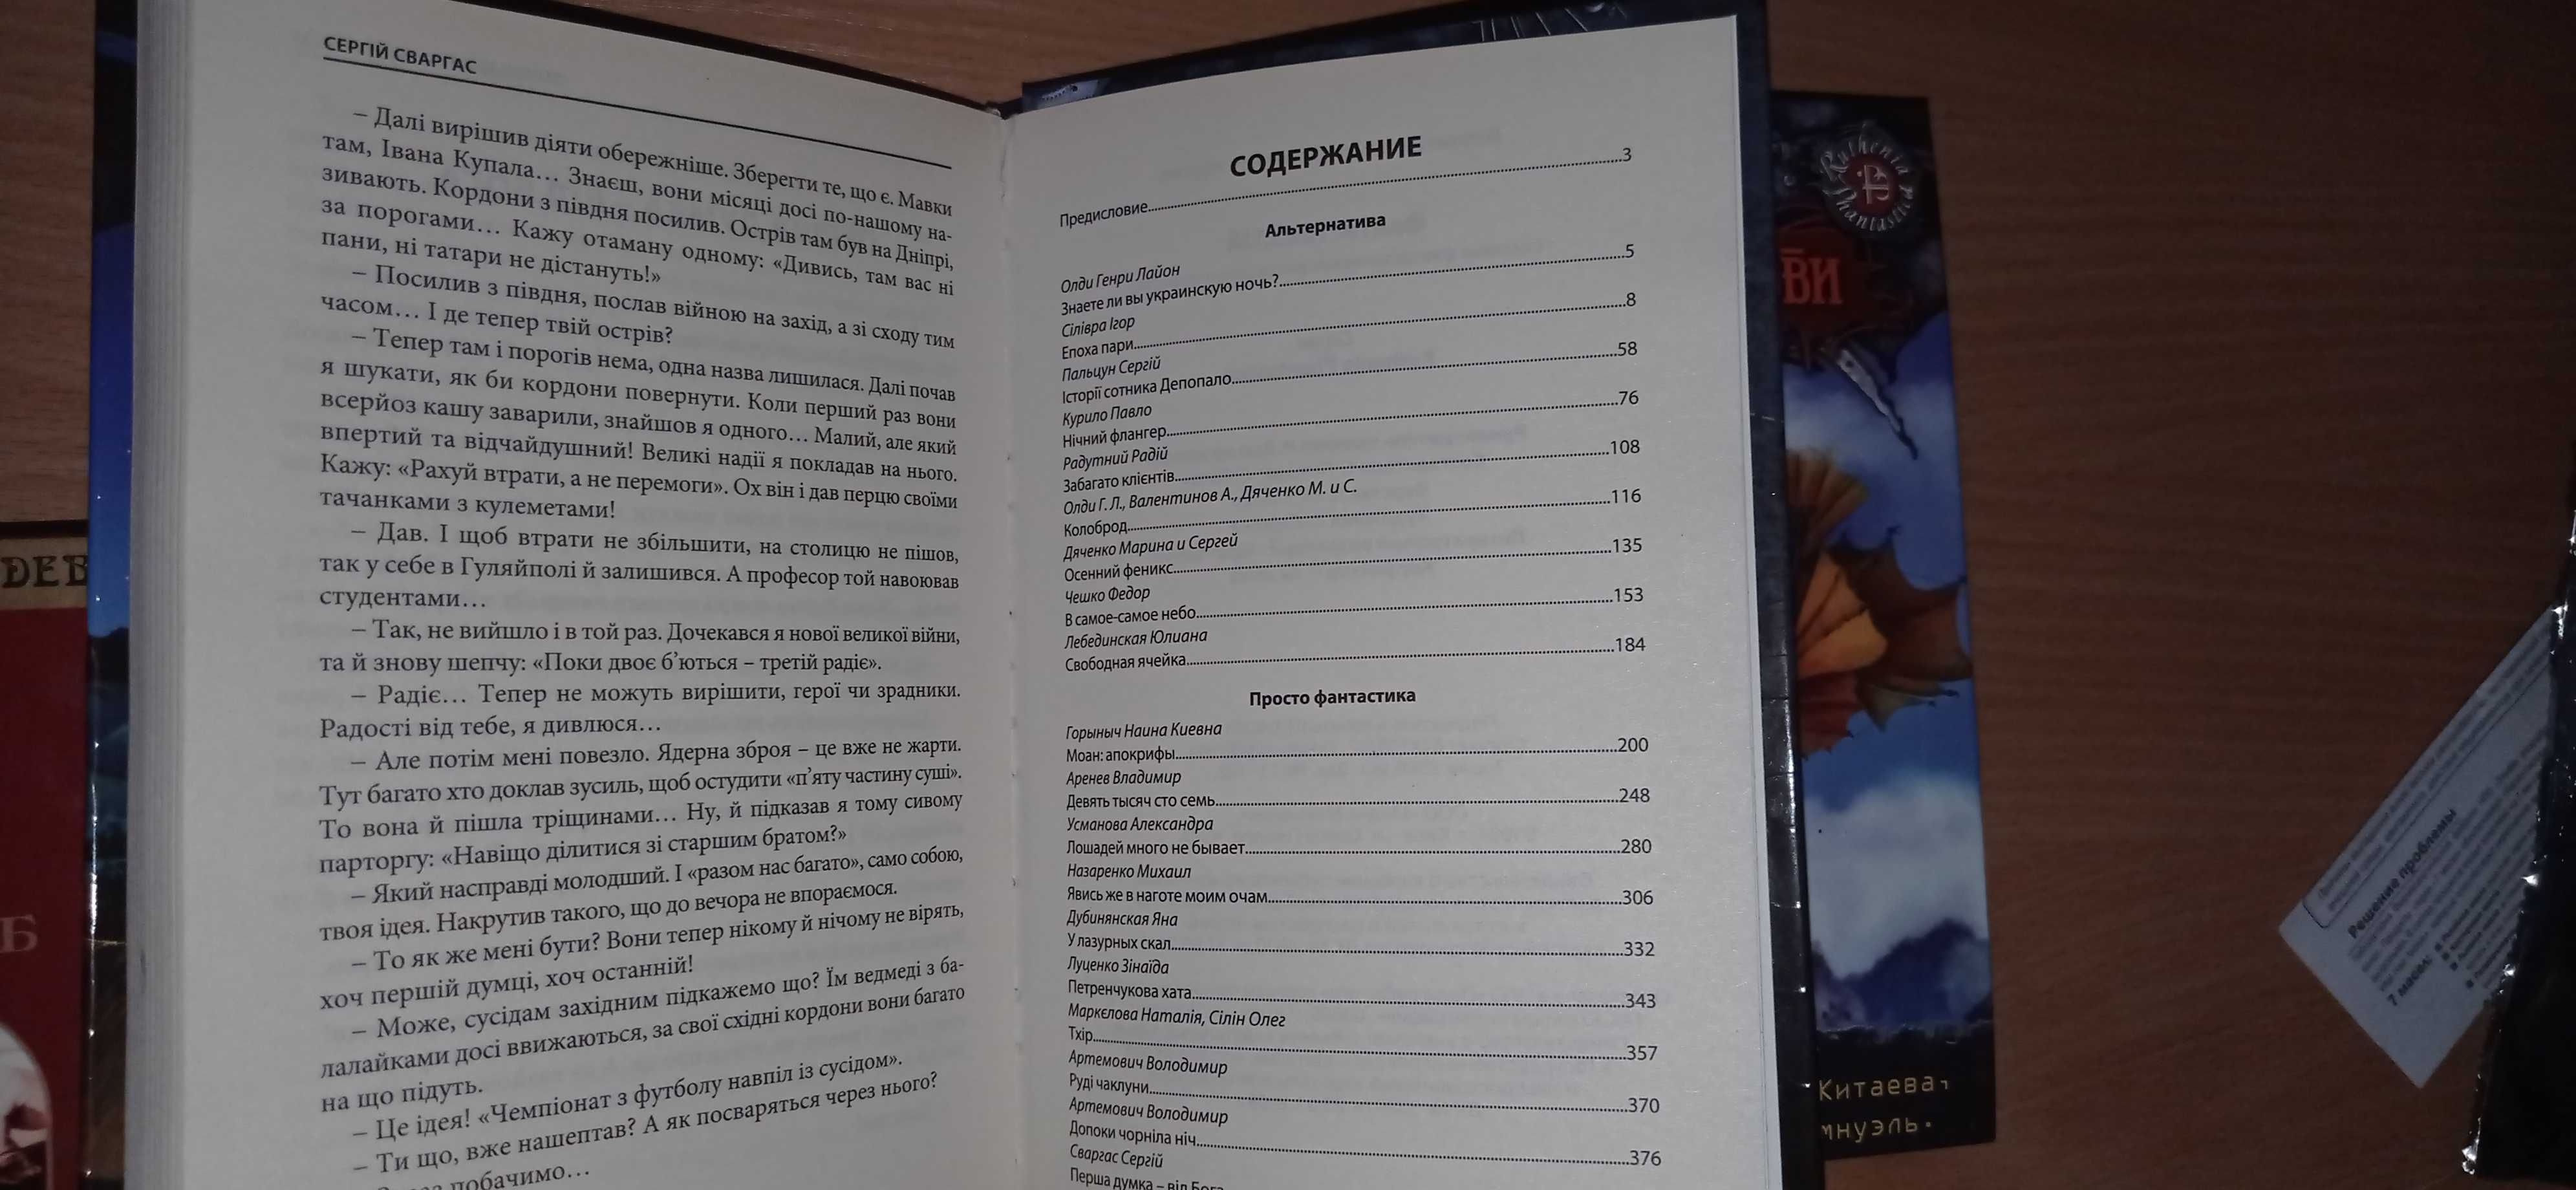 Уникальные книги из серии Ruthenia Phantastica Фантастика.UA и Формула